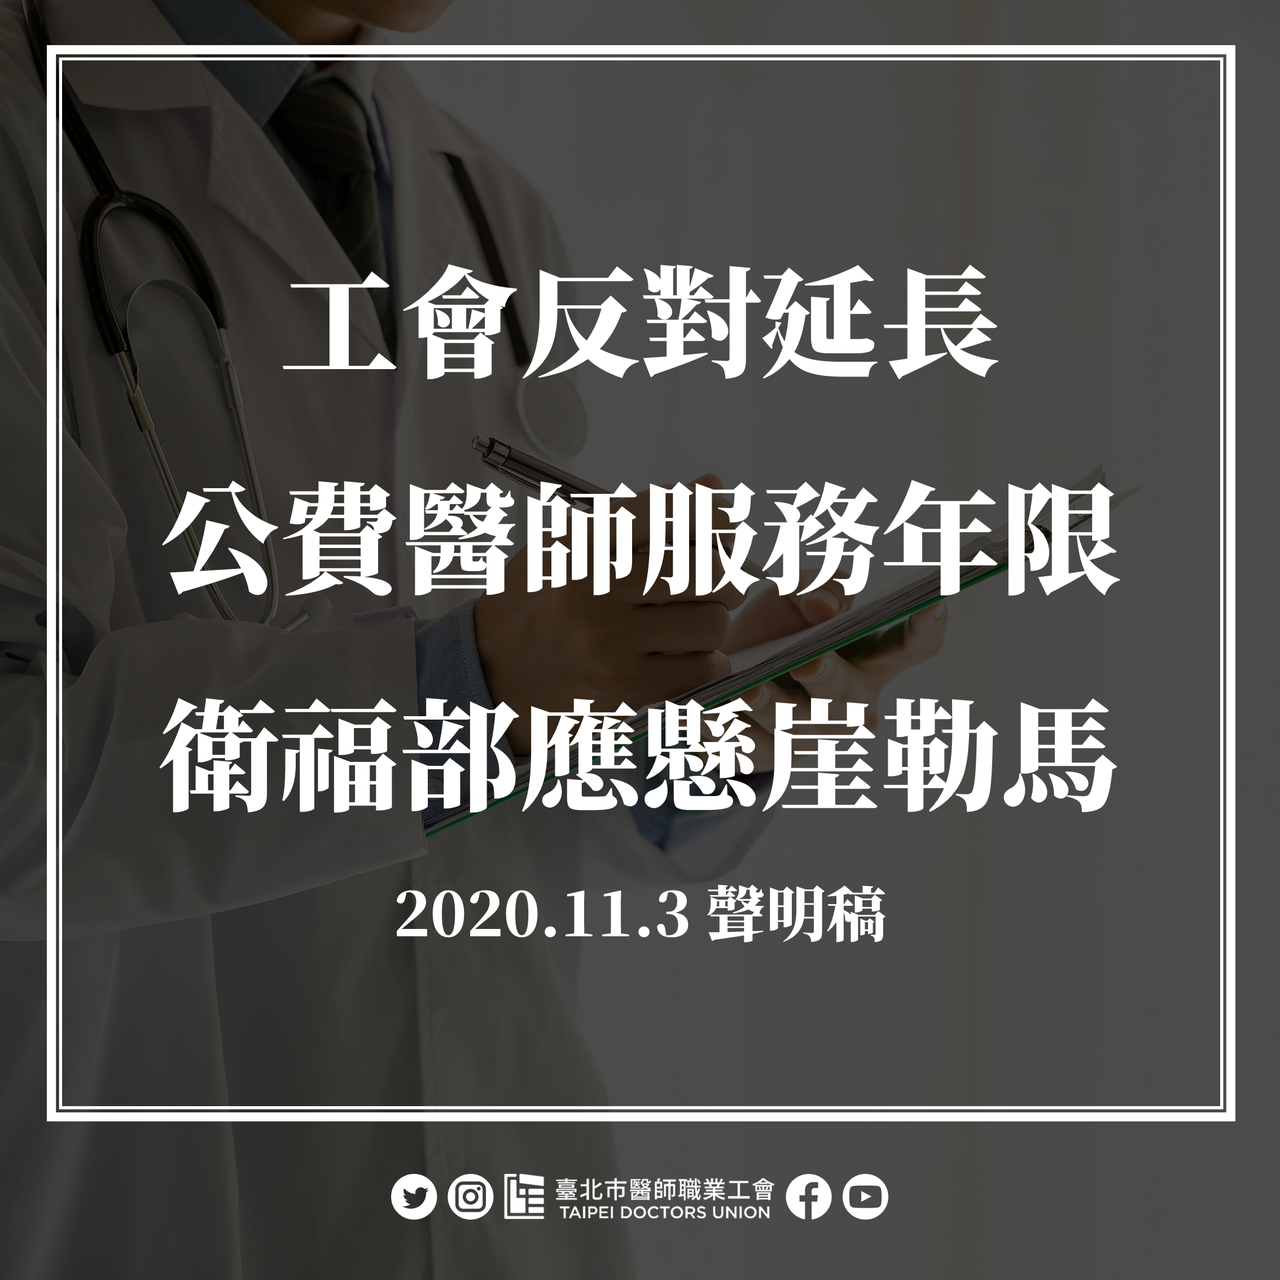 台北市醫師職業工會也發表聲明指出，延長公費醫師服務年限至十年之決議片面倉促，欠缺正當性，呼籲衛福部「懸崖勒馬」。圖／台北市醫師職業工會提供